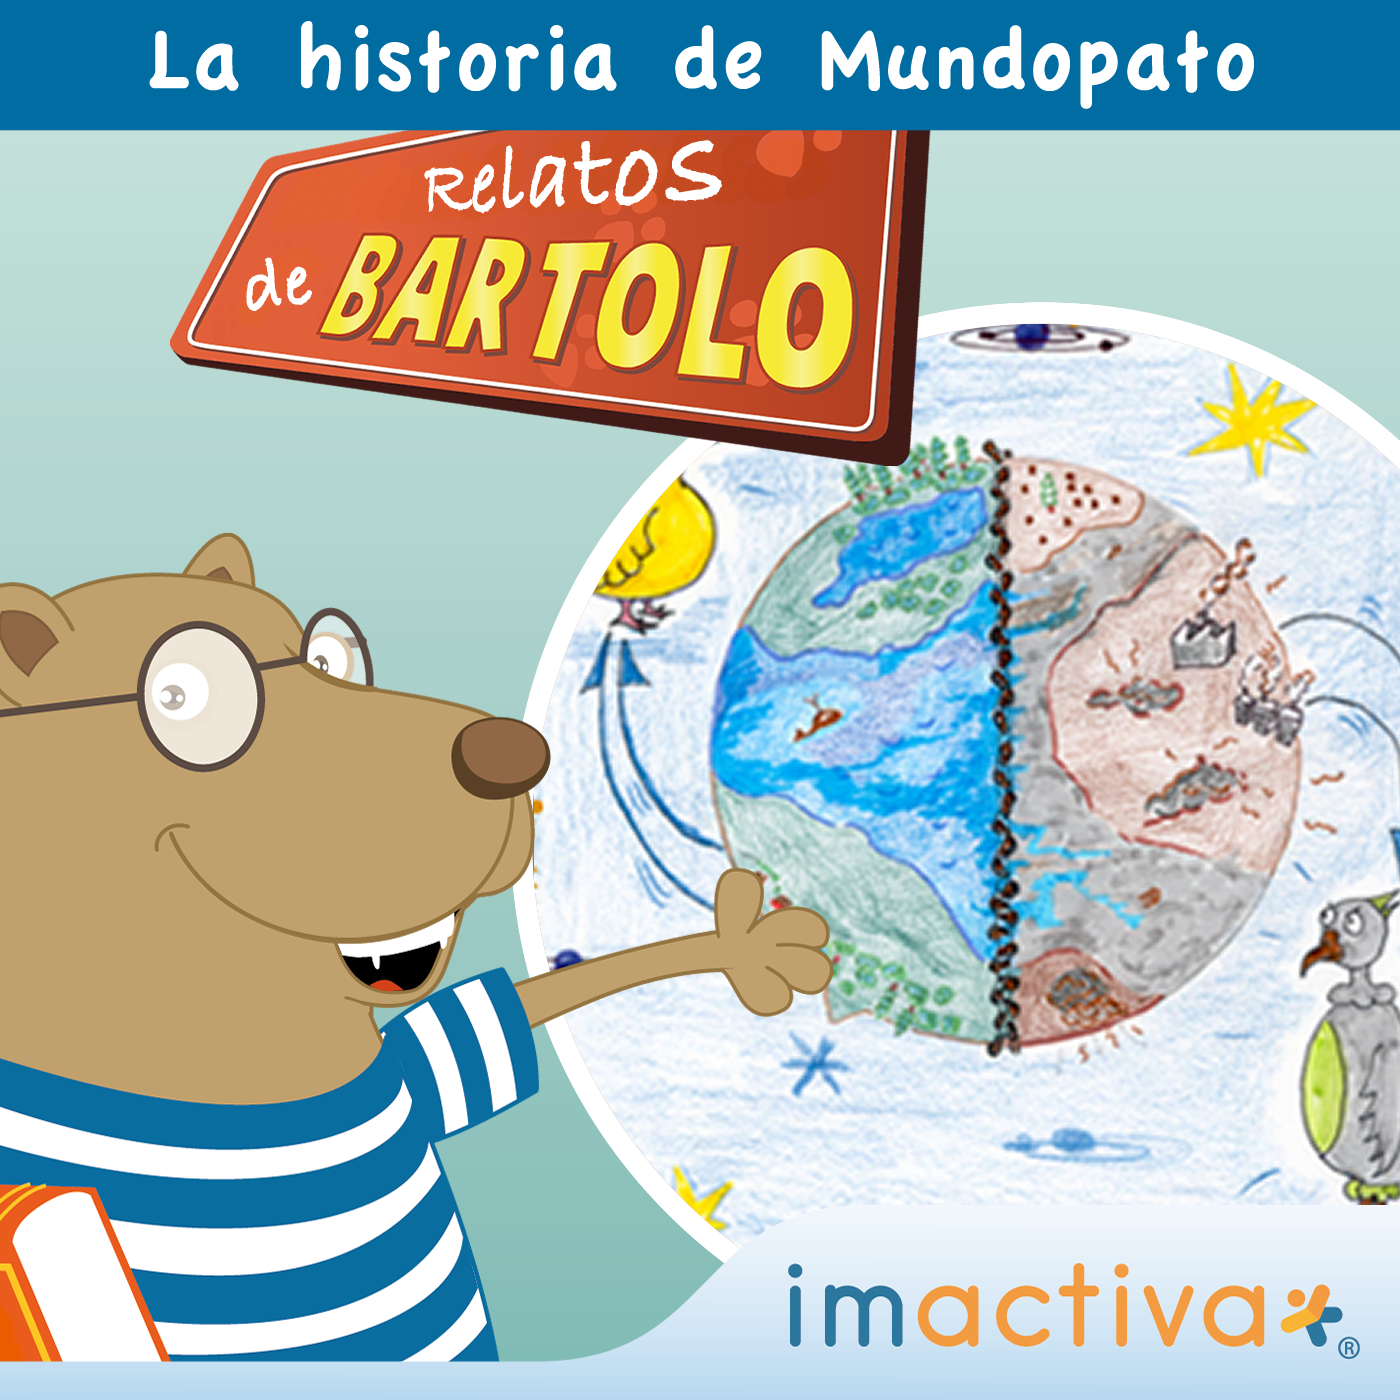 La historia de Mundopato